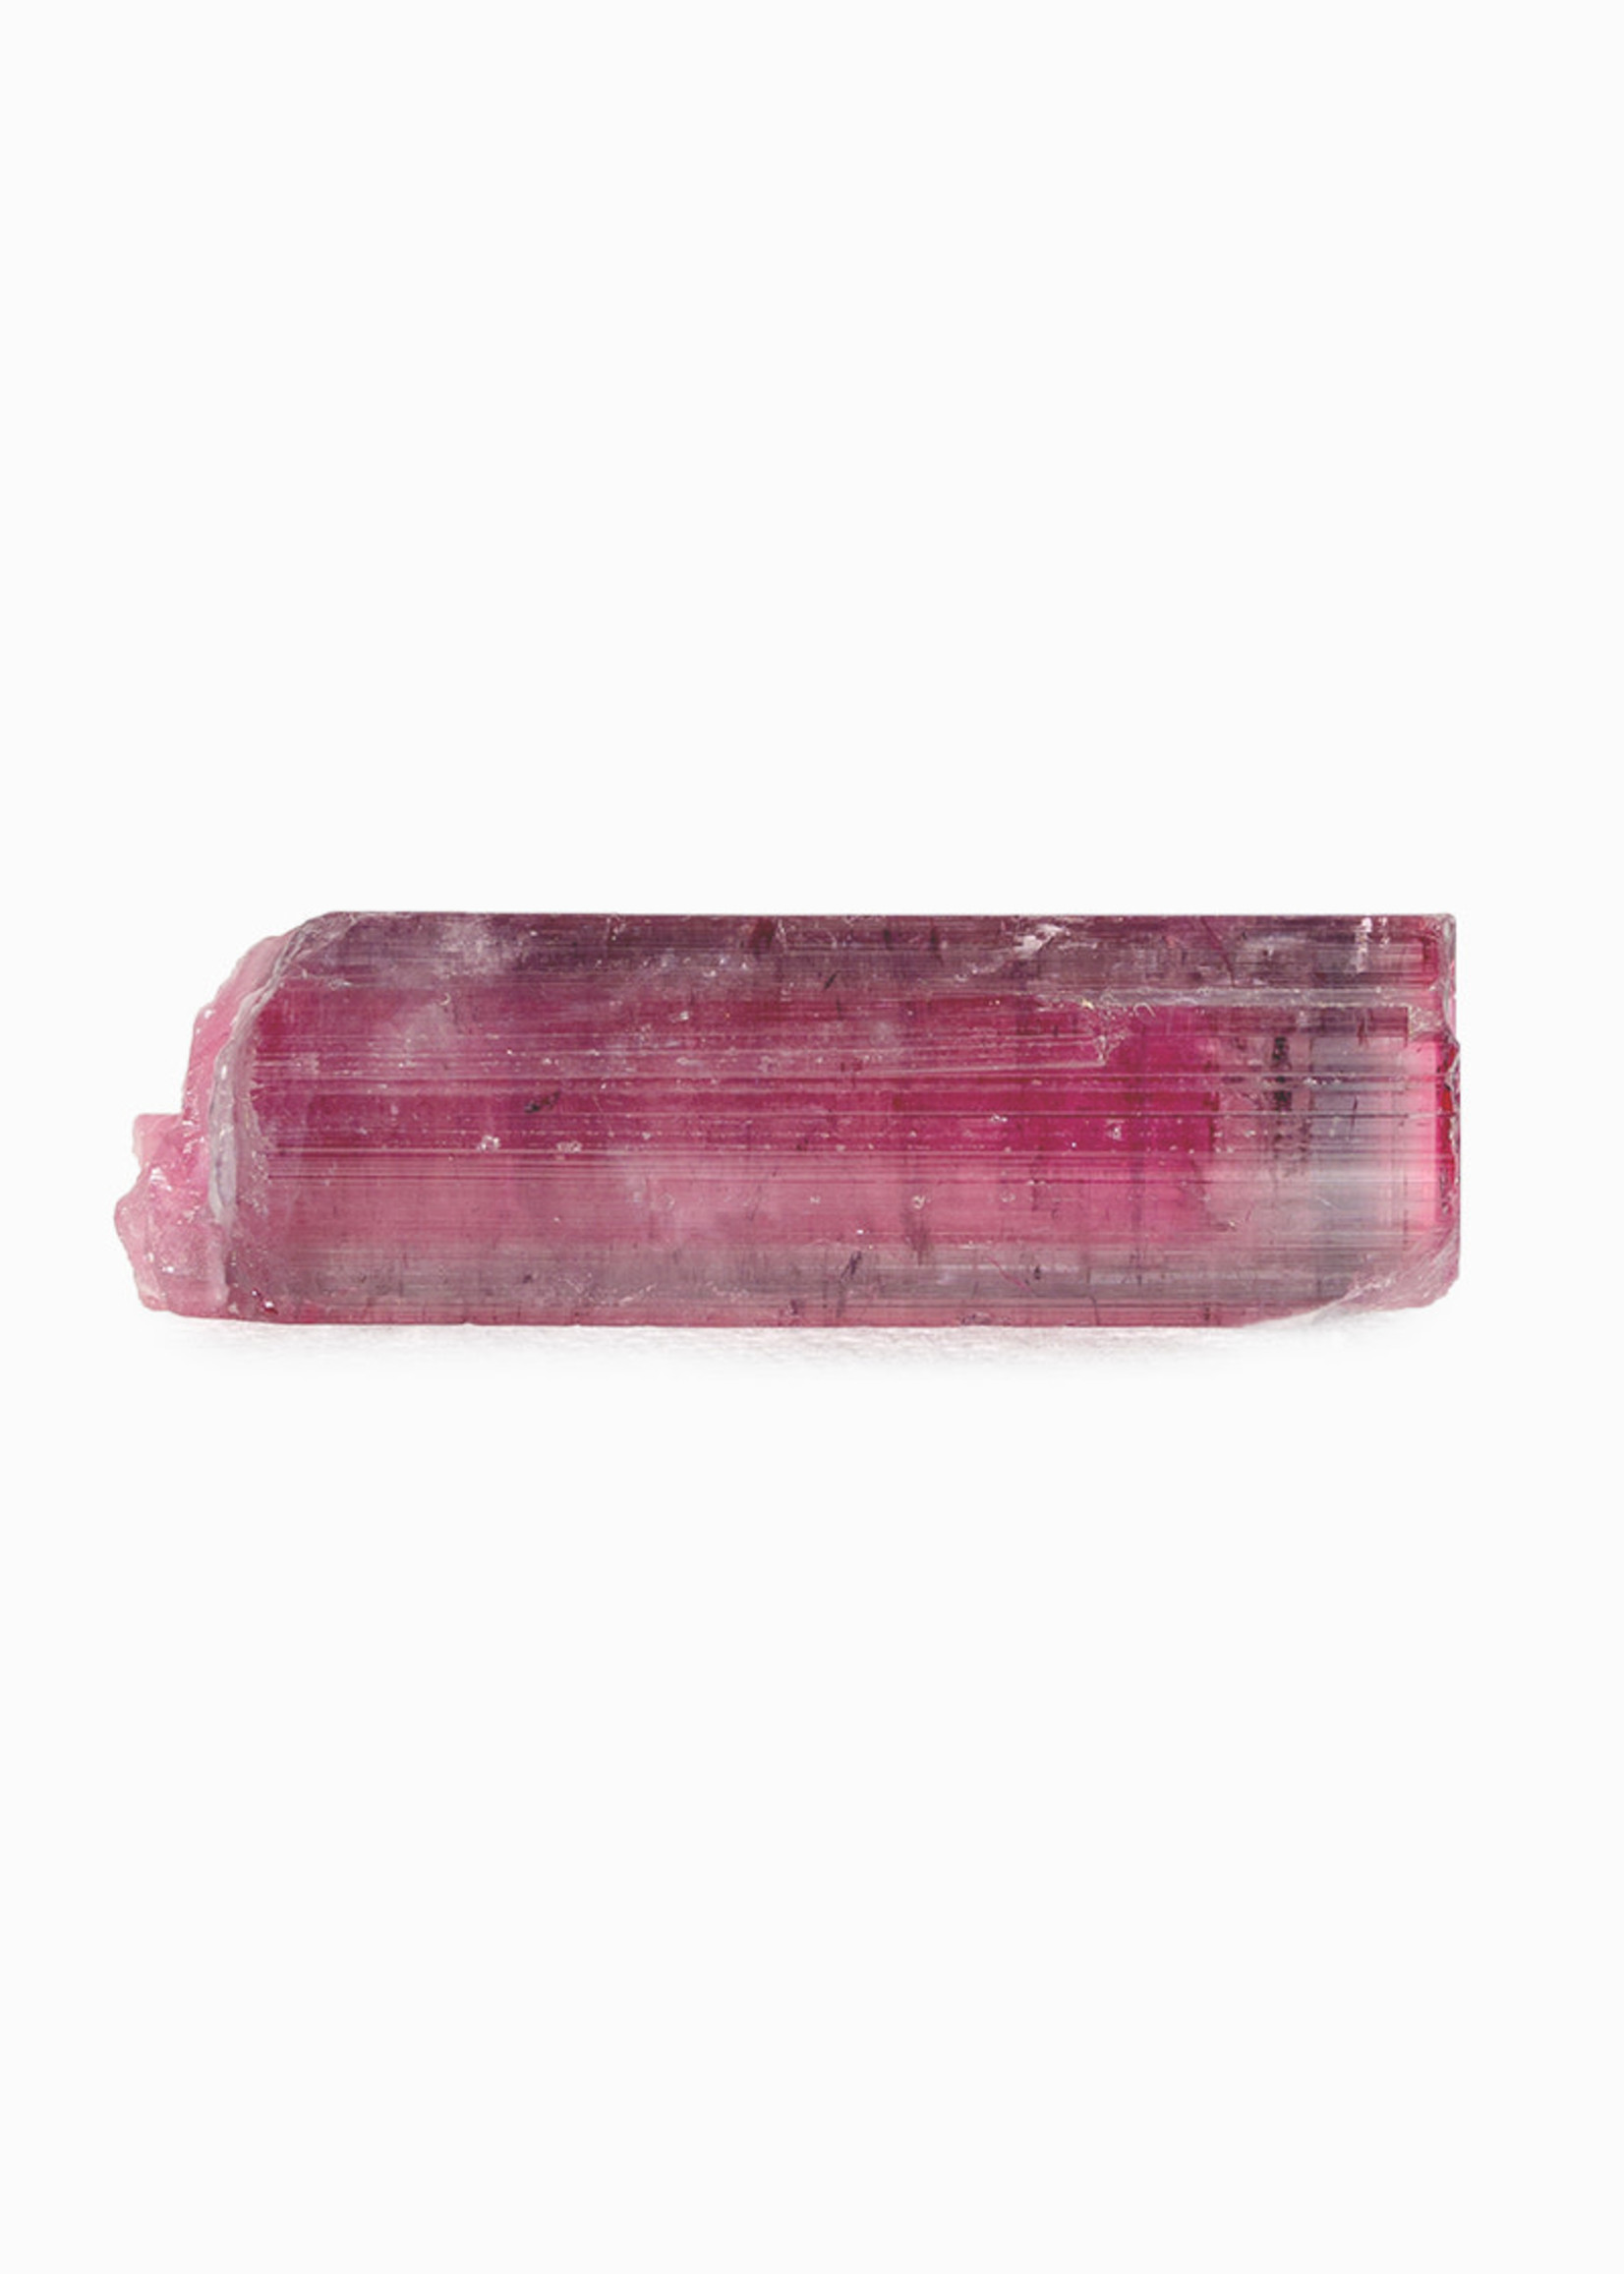 Minerals & Mystics Pink Tourmaline Crystal